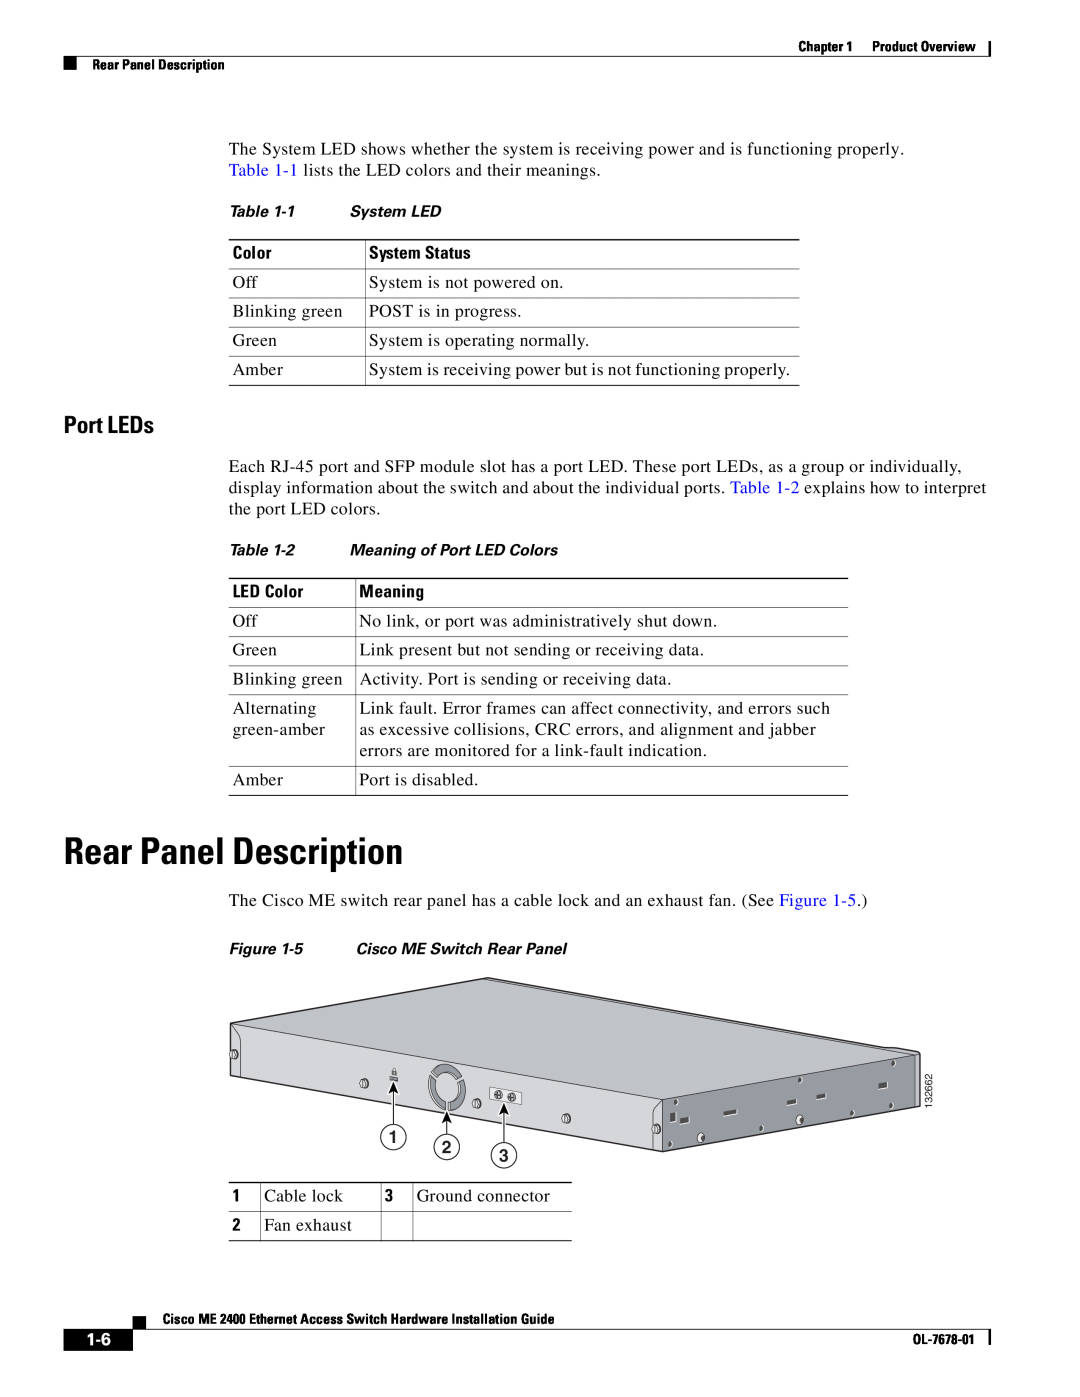 Cisco Systems ME 2400 manual Rear Panel Description, Port LEDs 